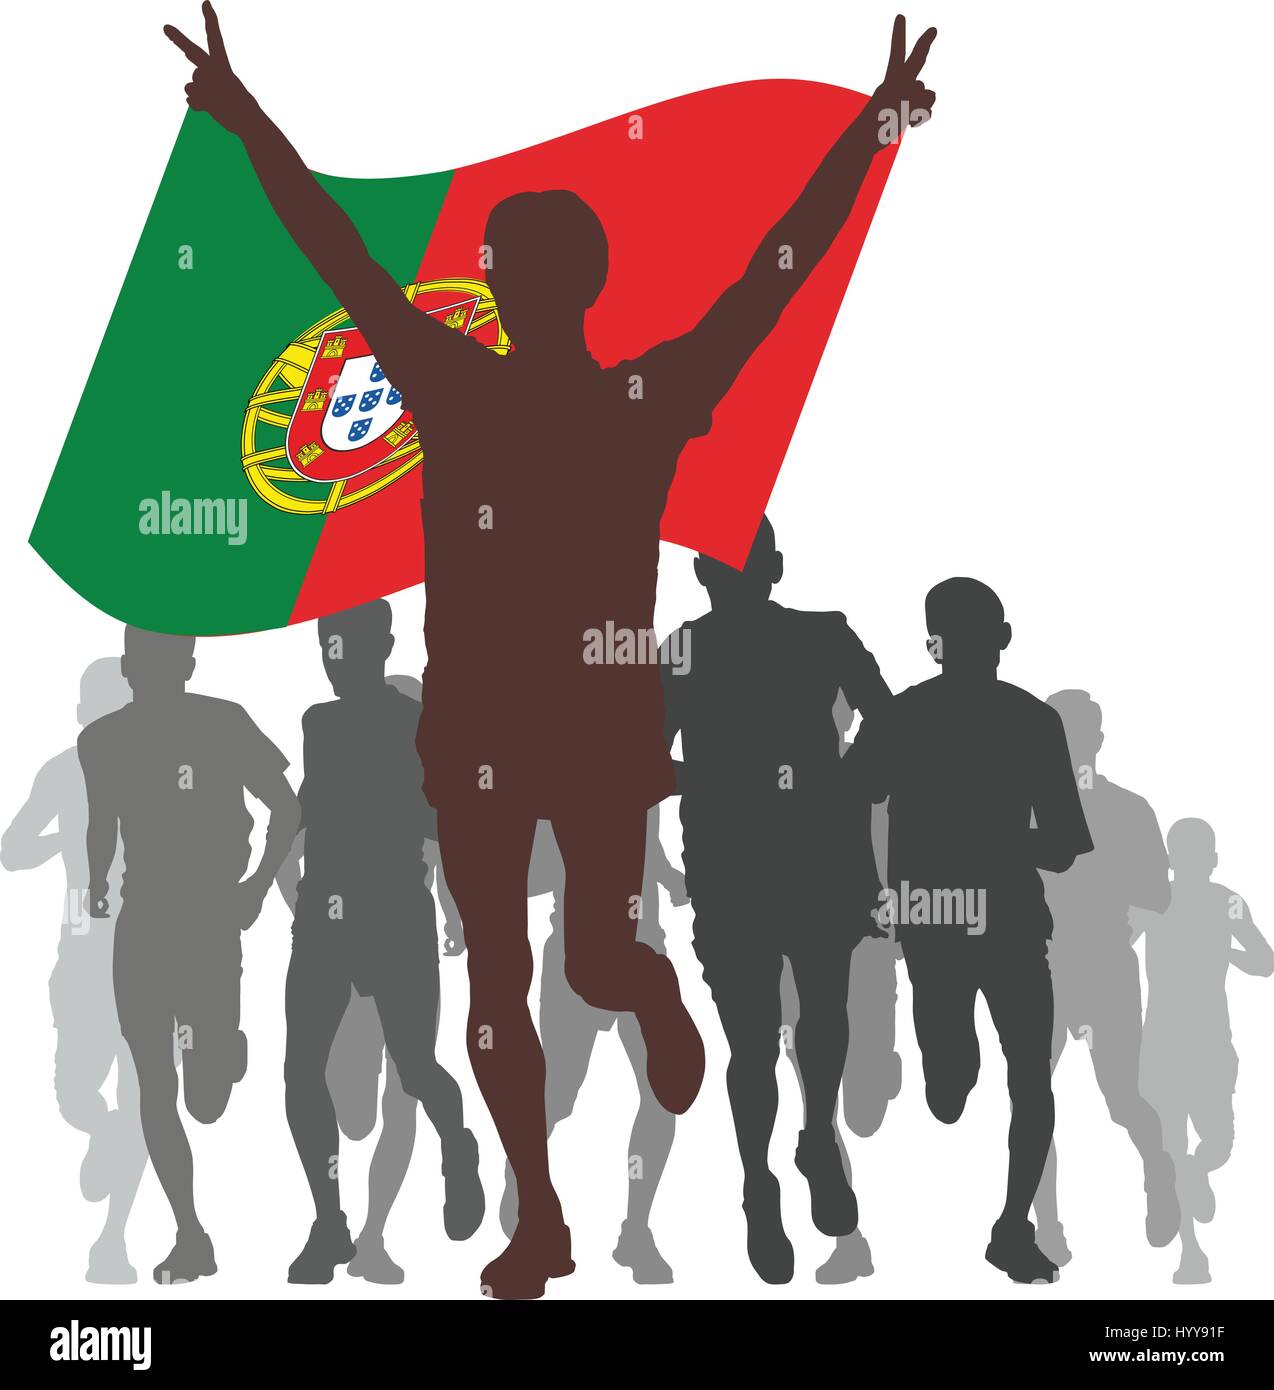 Gewinner mit der Portugal-Flagge am Ziel Stock Vektor